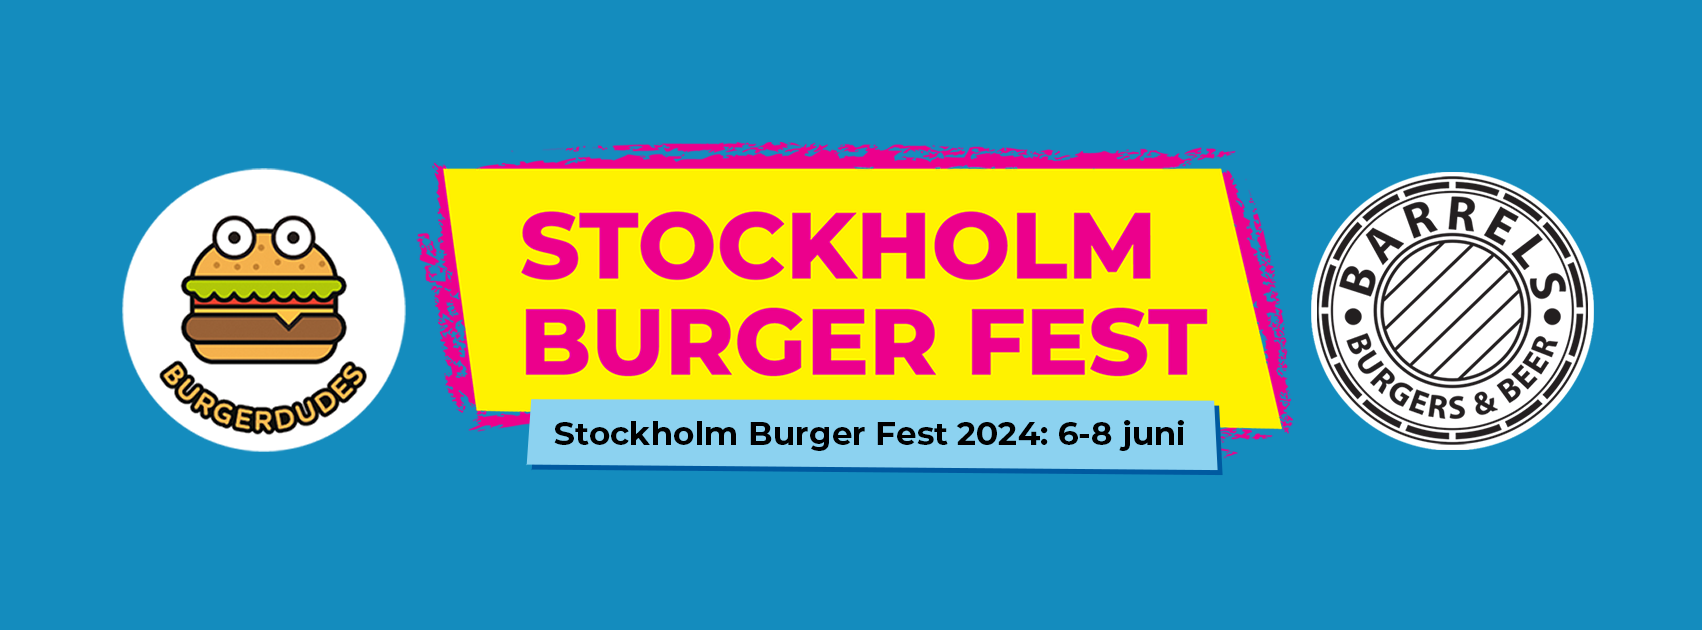 Stockholm Burger Fest 2024